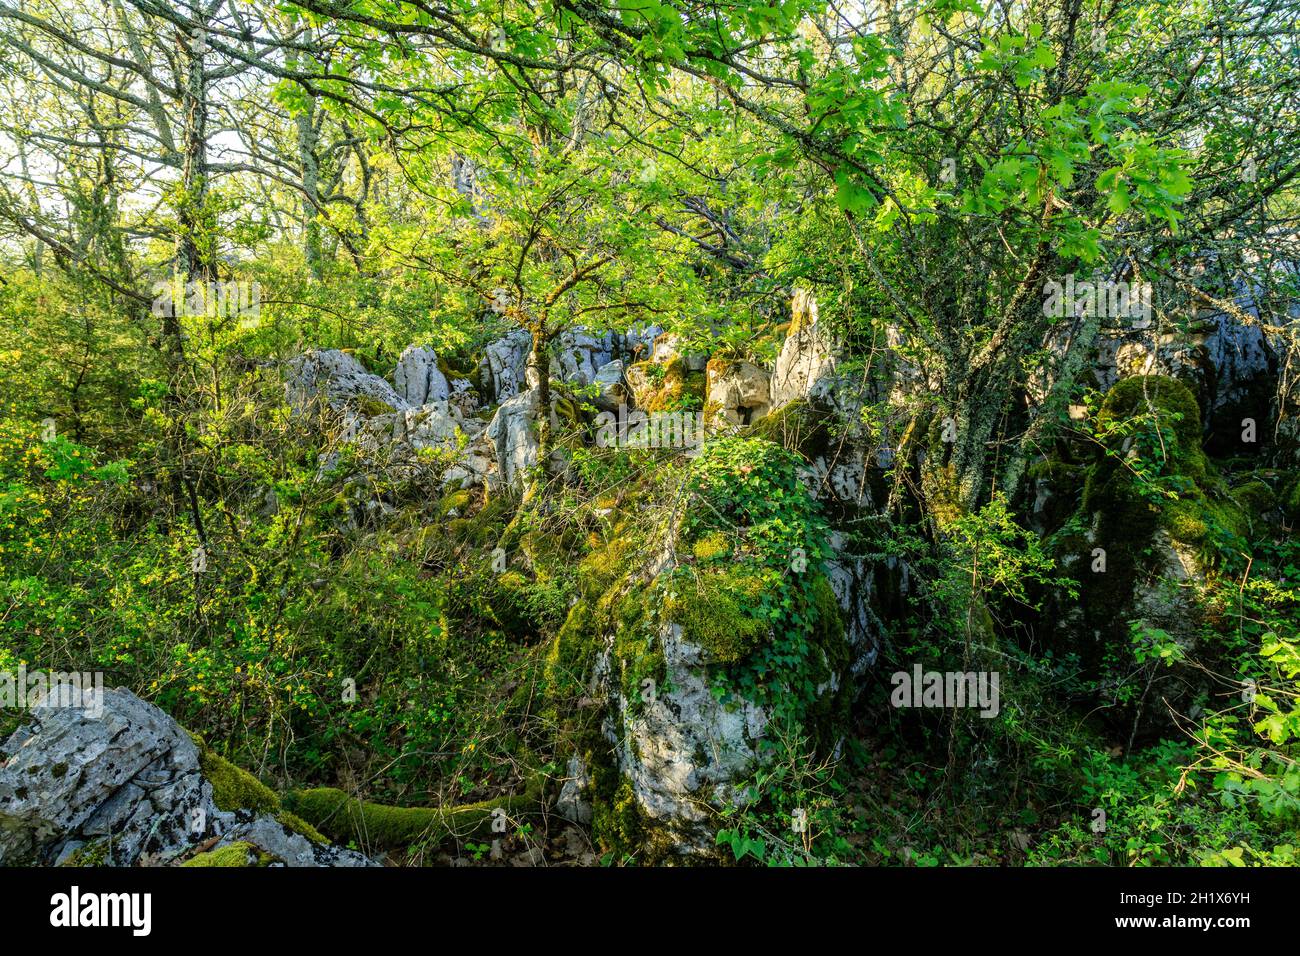 France, Ardeche, Parc naturel regional des Monts d'Ardeche (Monts d'Ardeche Regional Natural Park), Les Vans, Bois de Paiolive, undergrowth // France, Stock Photo